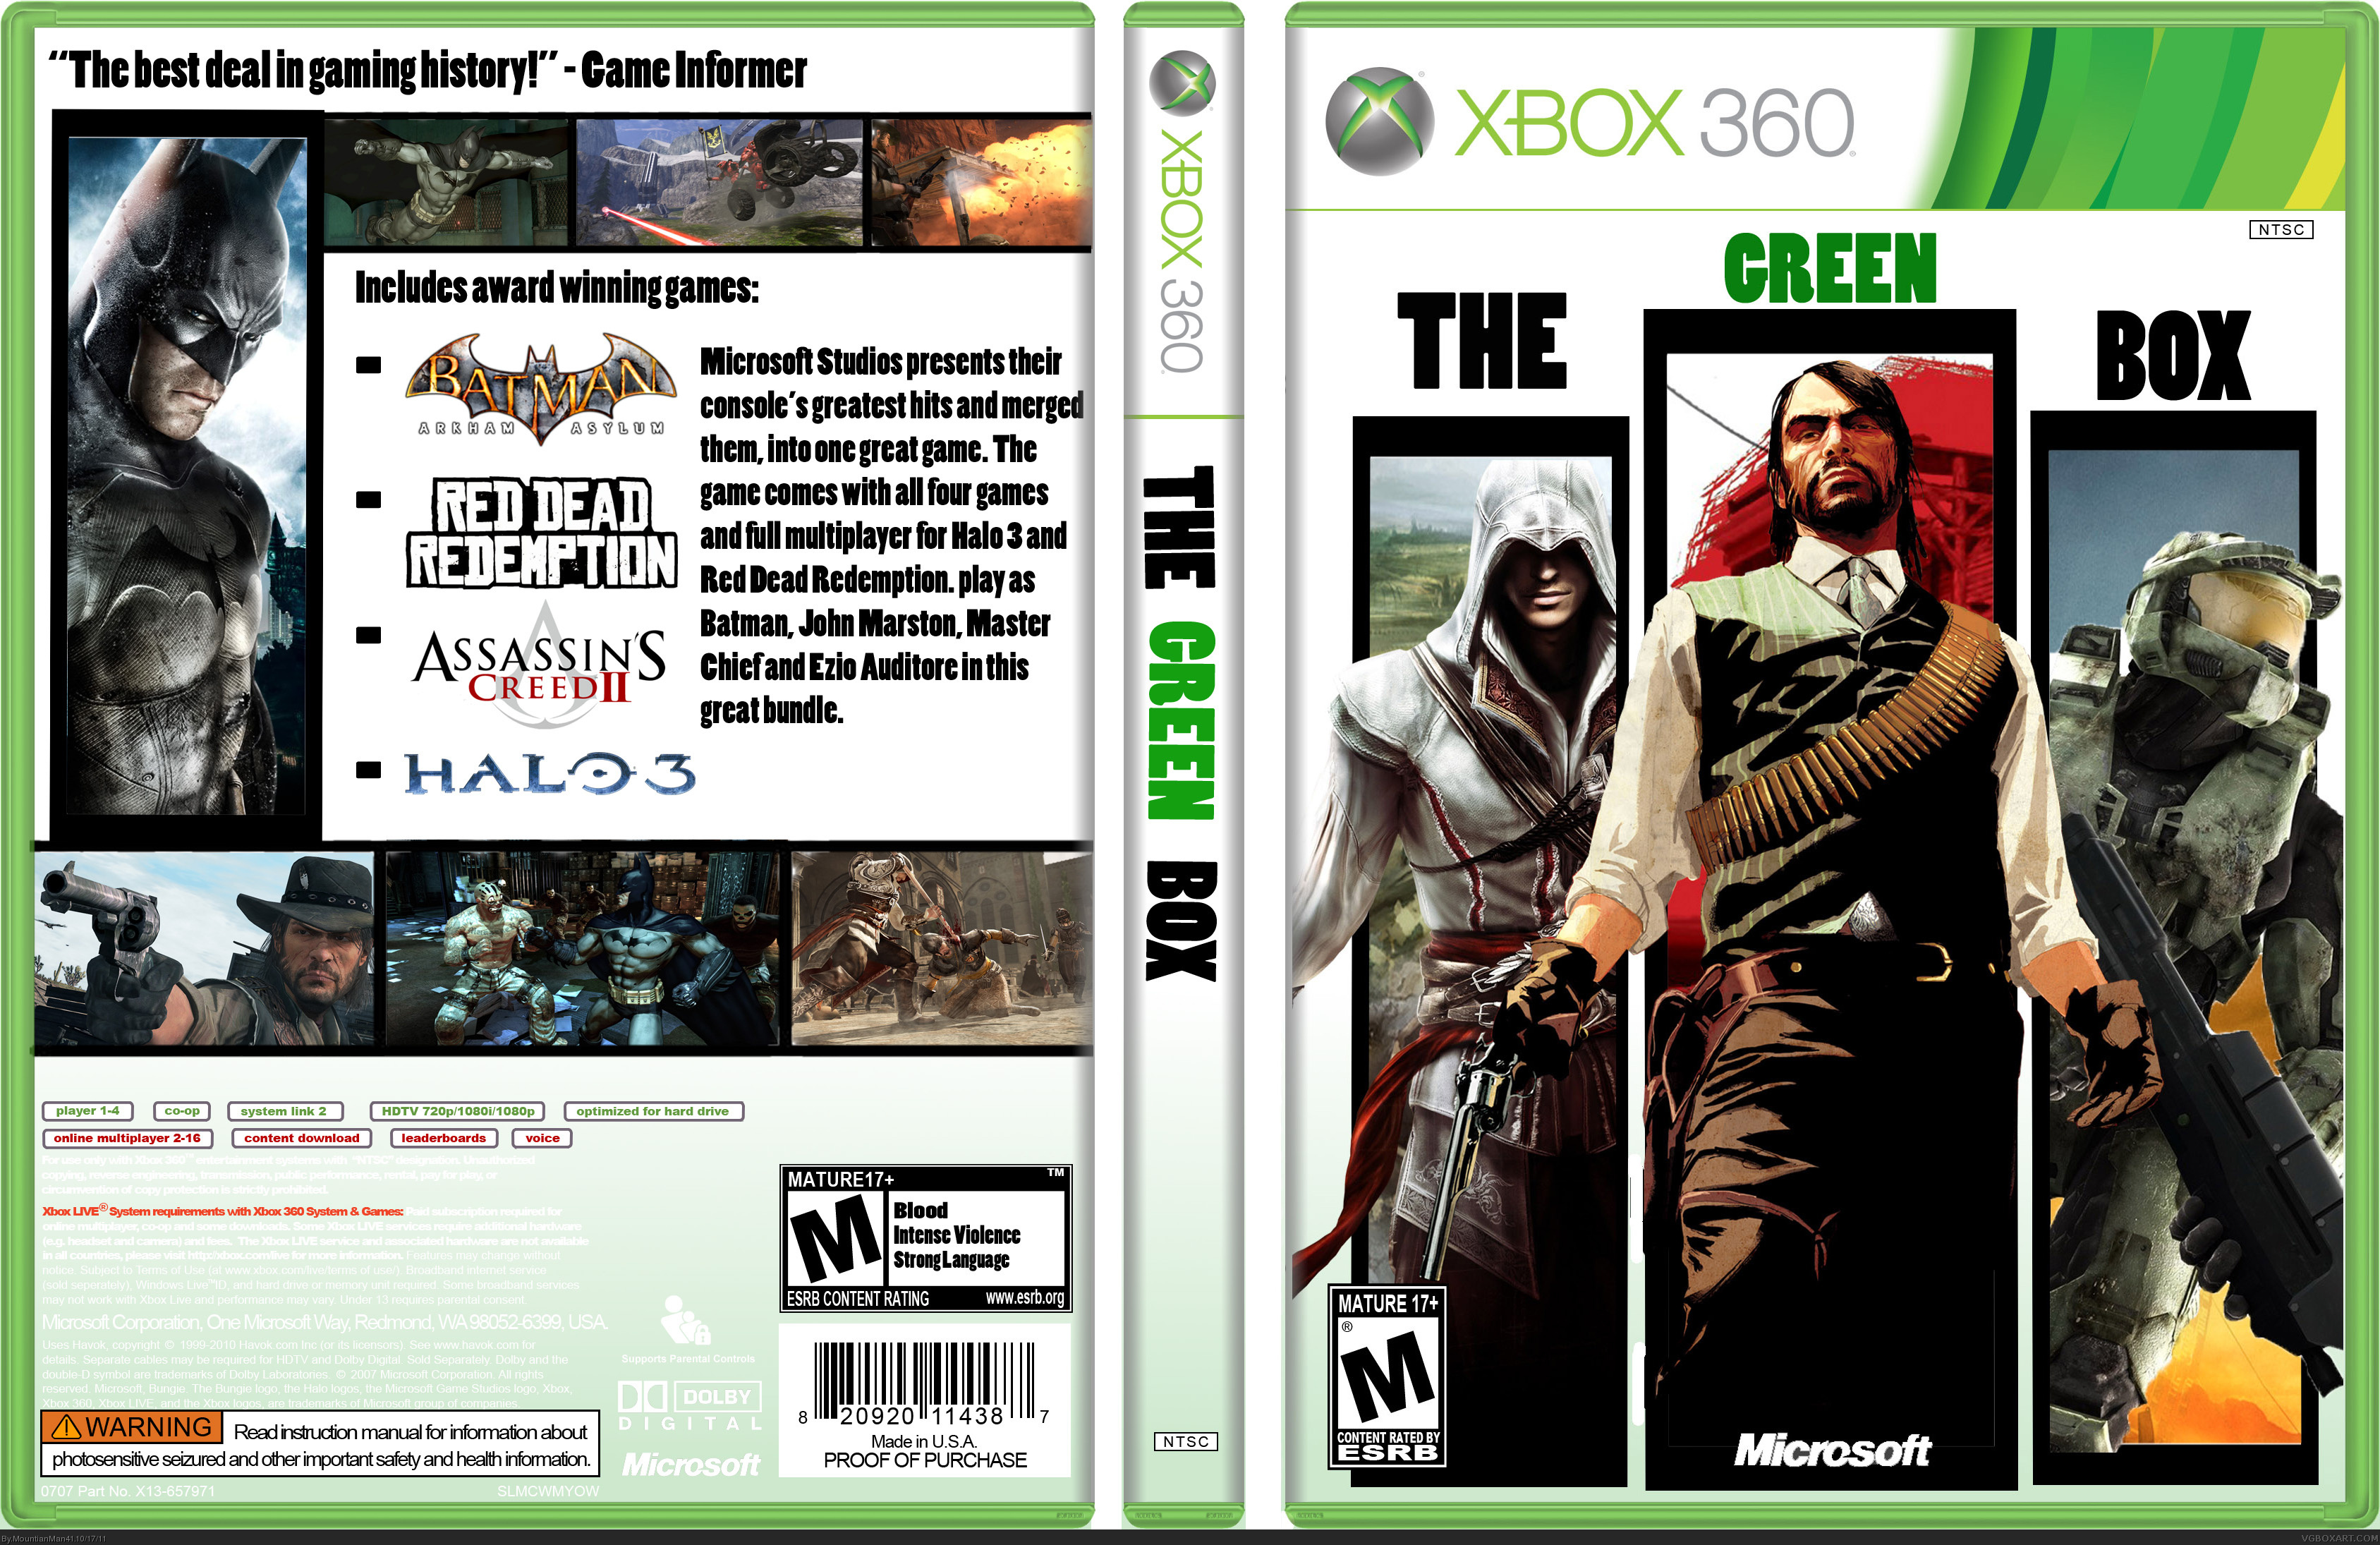 The Green Box box cover